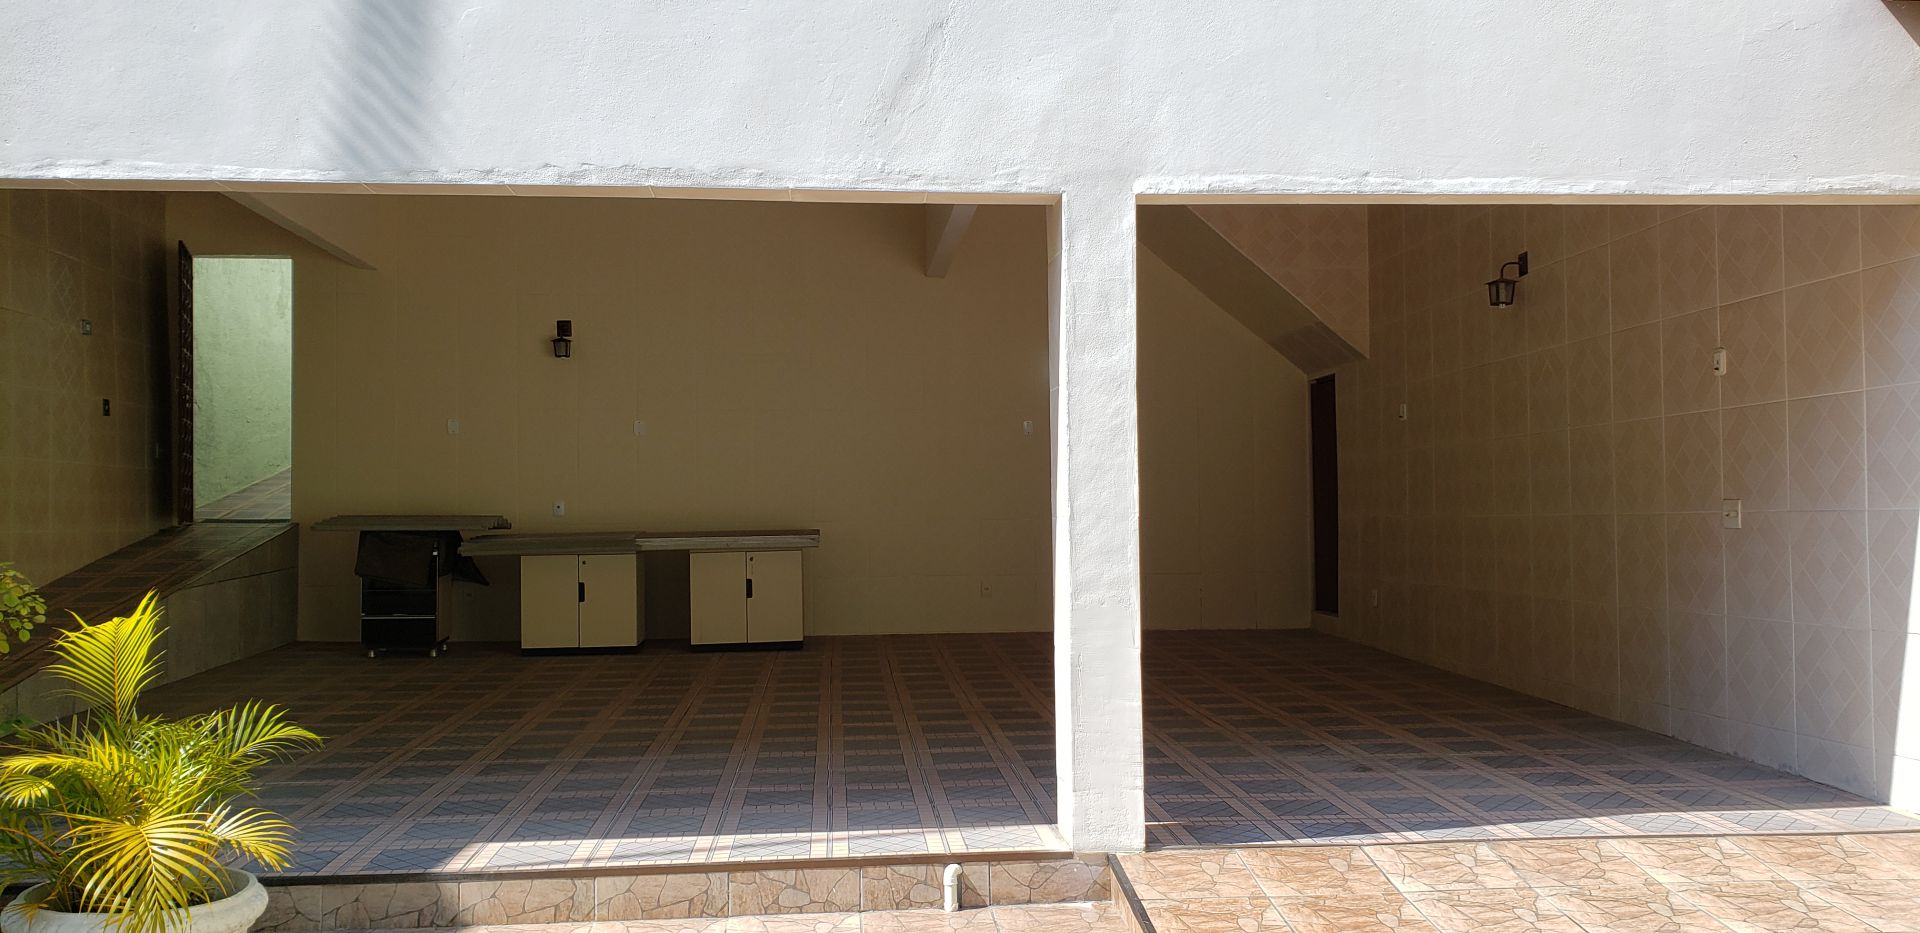 FOTO 28 - Casa 3 quartos à venda Vila Valqueire, Rio de Janeiro - R$ 860.000 - RF268 - 29